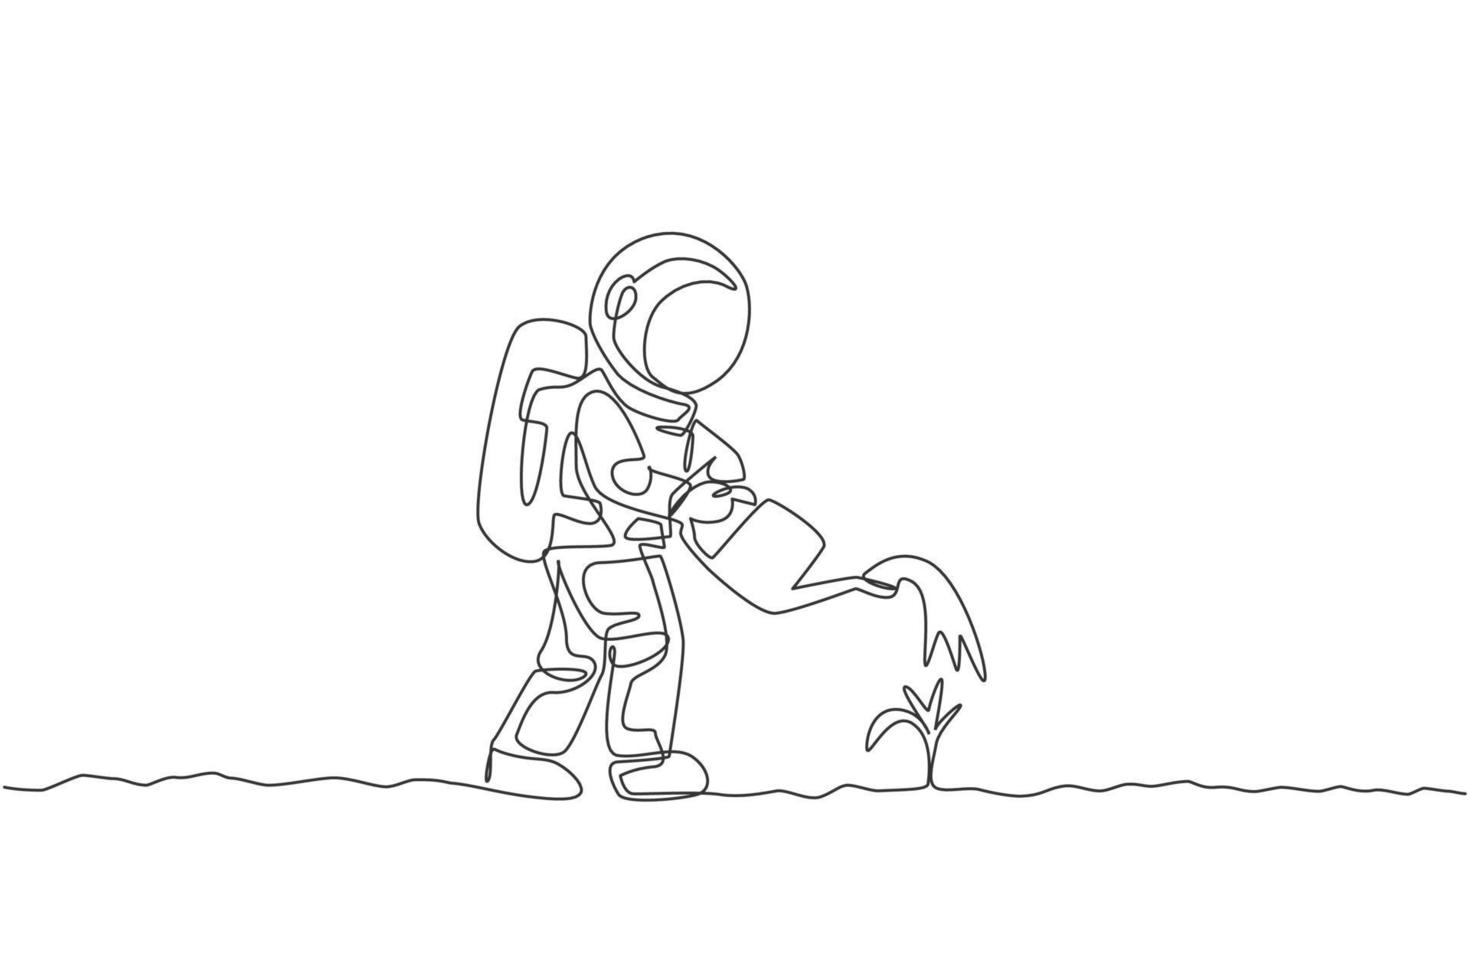 en kontinuerlig linjeteckning av rymdmannen vattnar växtträd med metallkanna i månytan. djupt rymd jordbruk astronaut koncept. dynamisk enkel linje rita grafisk design vektor illustration